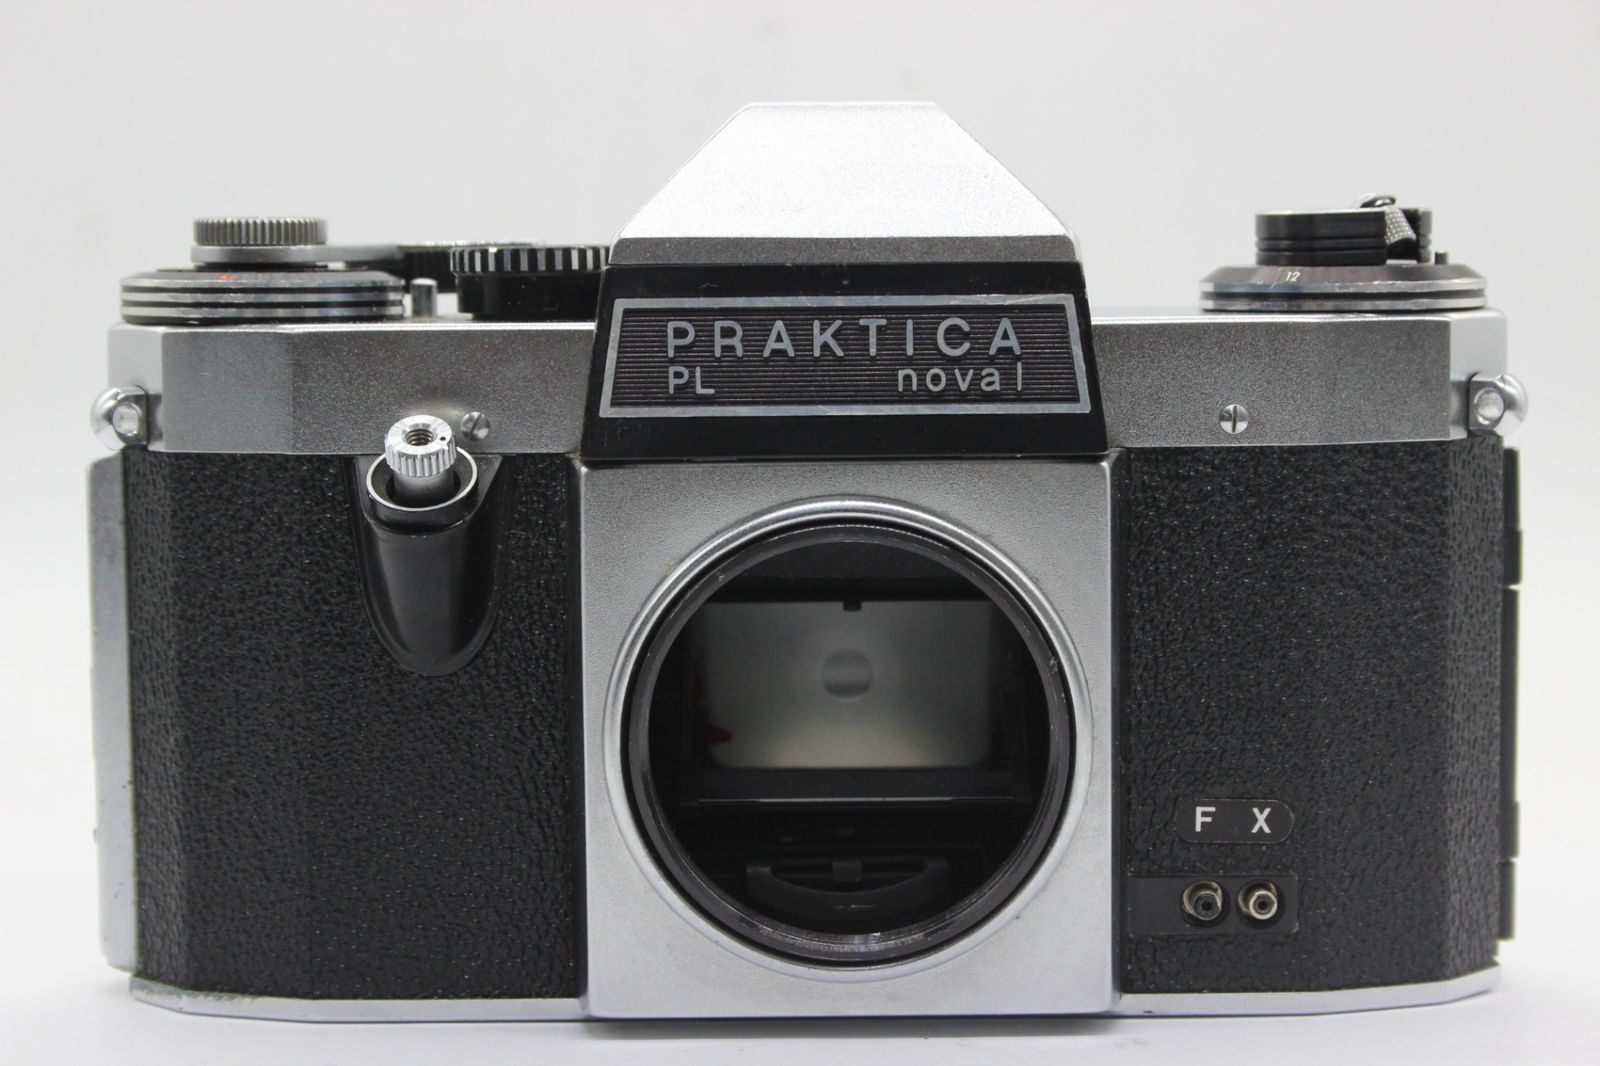 【返品保証】 PRAKTICA PL noval Prakticar 50mm F2.8 ボディレンズセット s8550